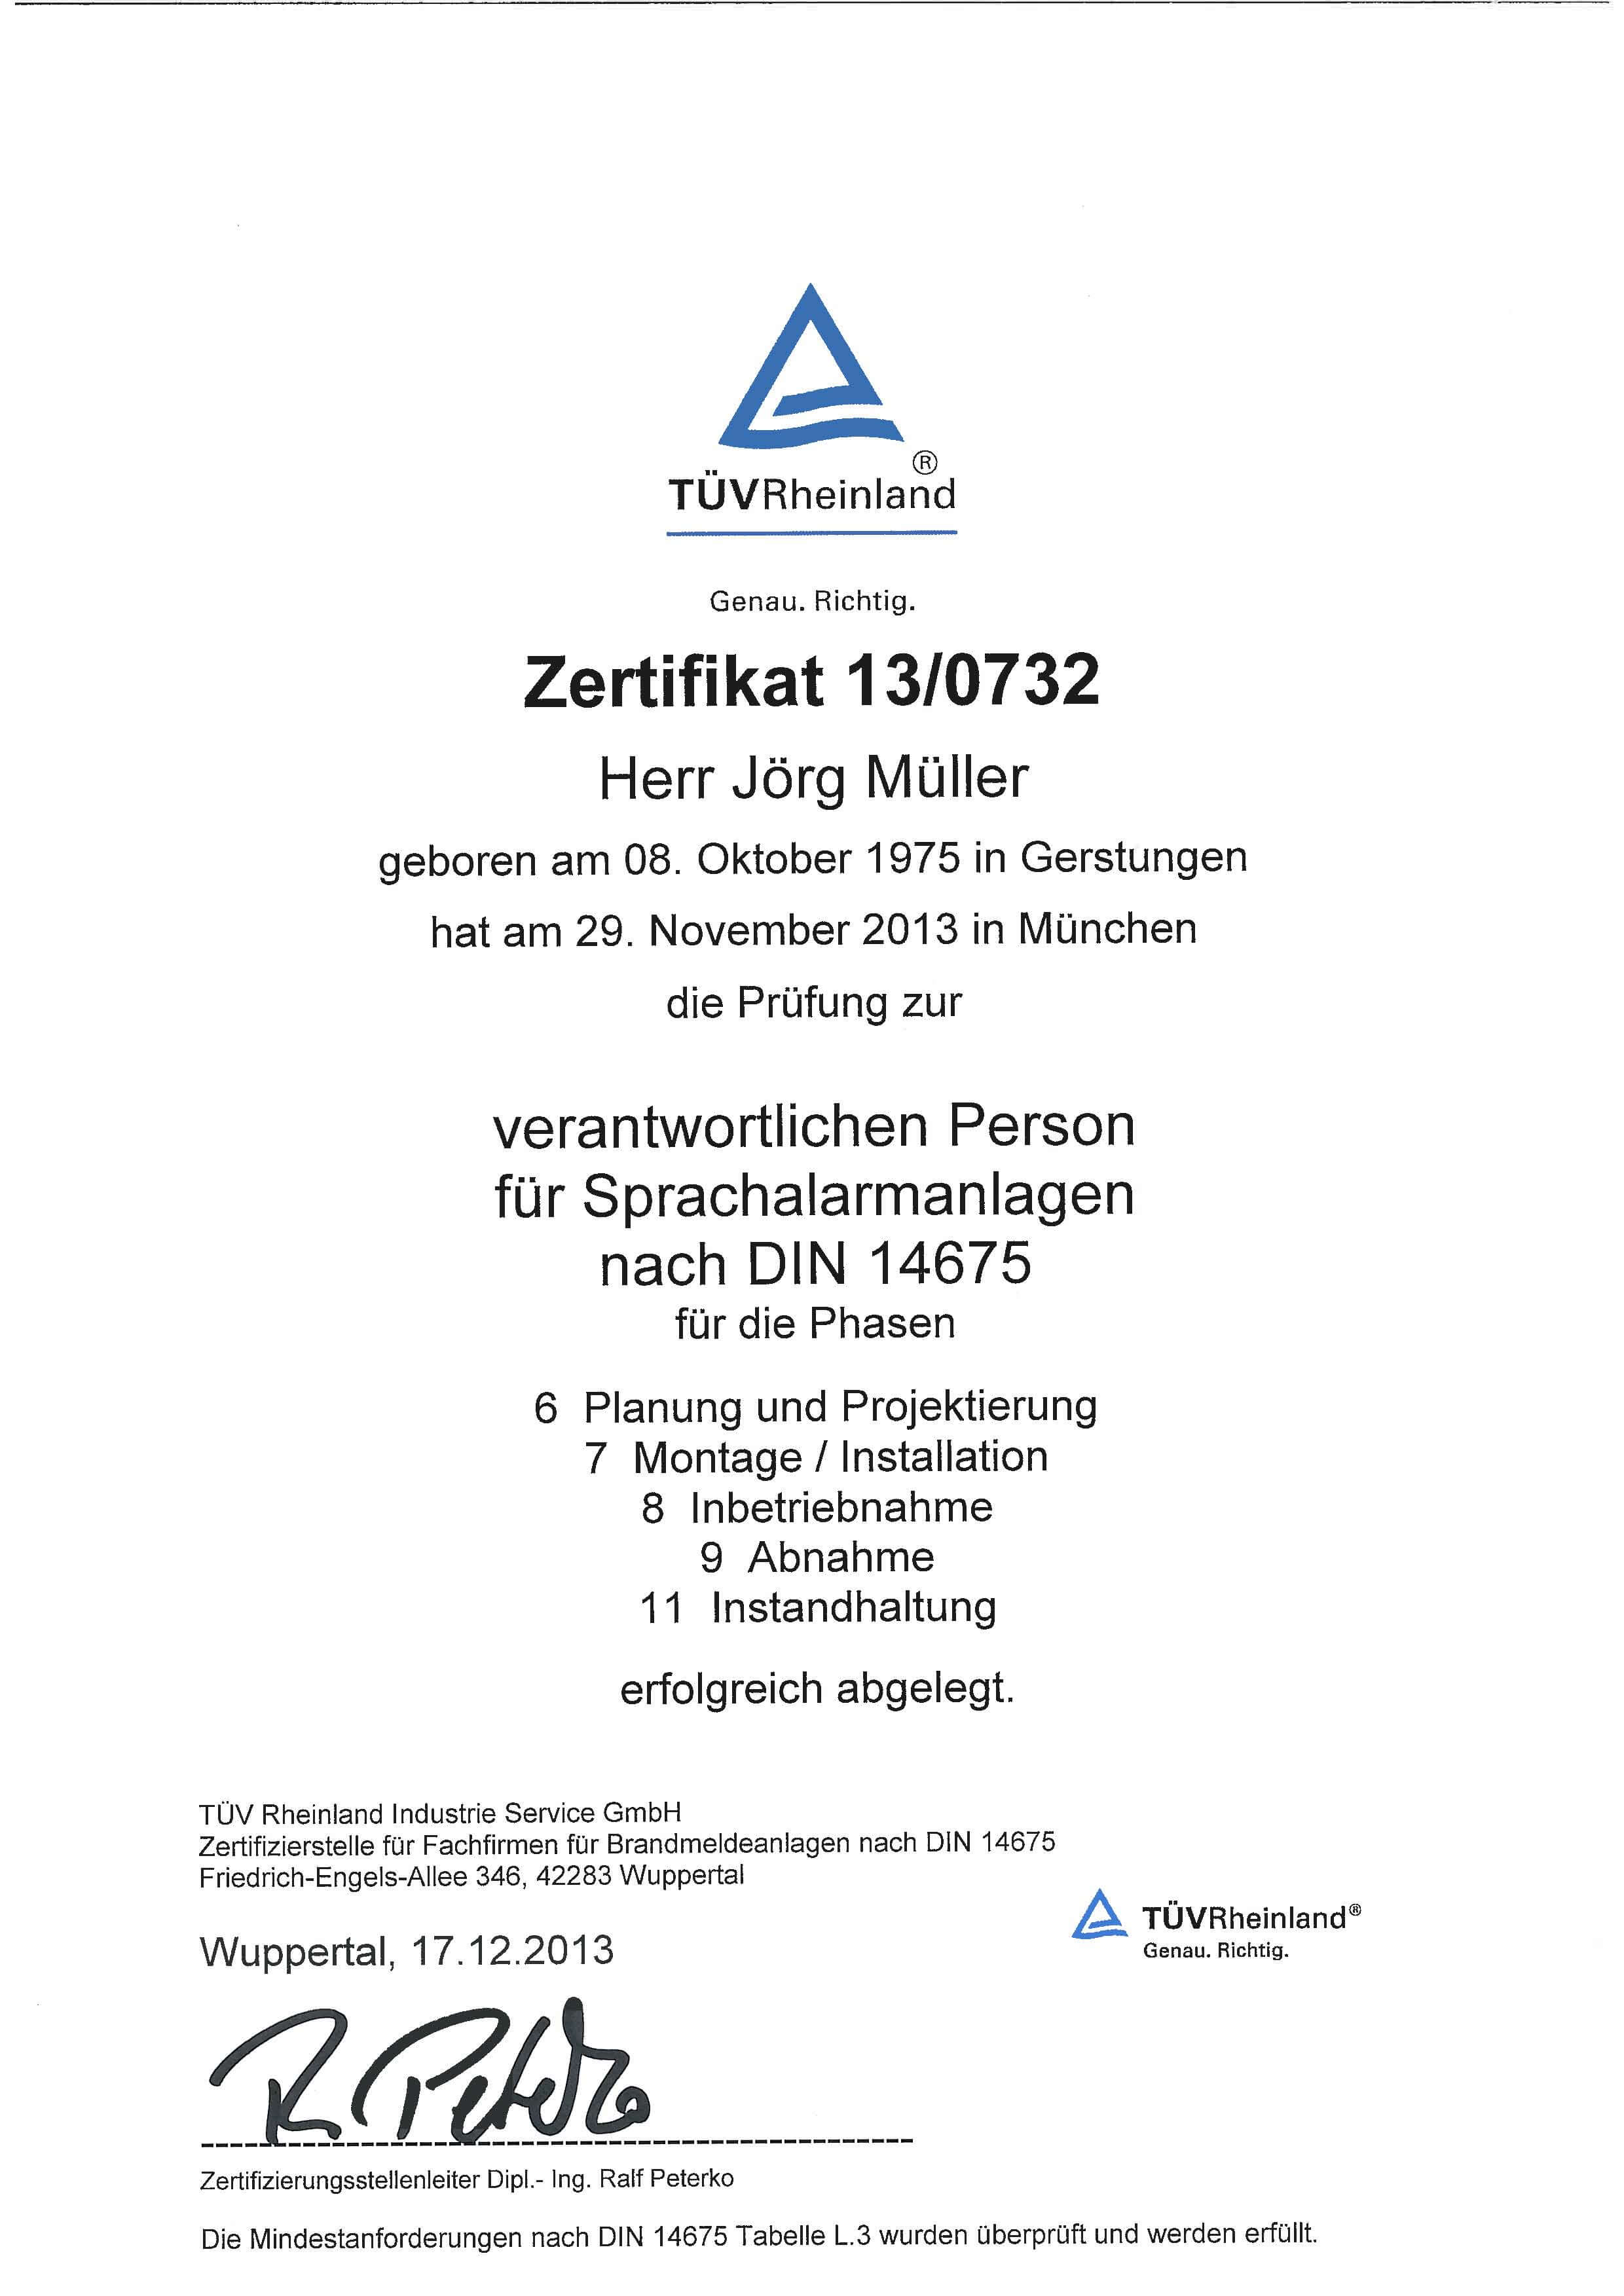 Zertifikat_TÜV-Rheinland_Verantwortliche_Person_SAA_DIN 14675